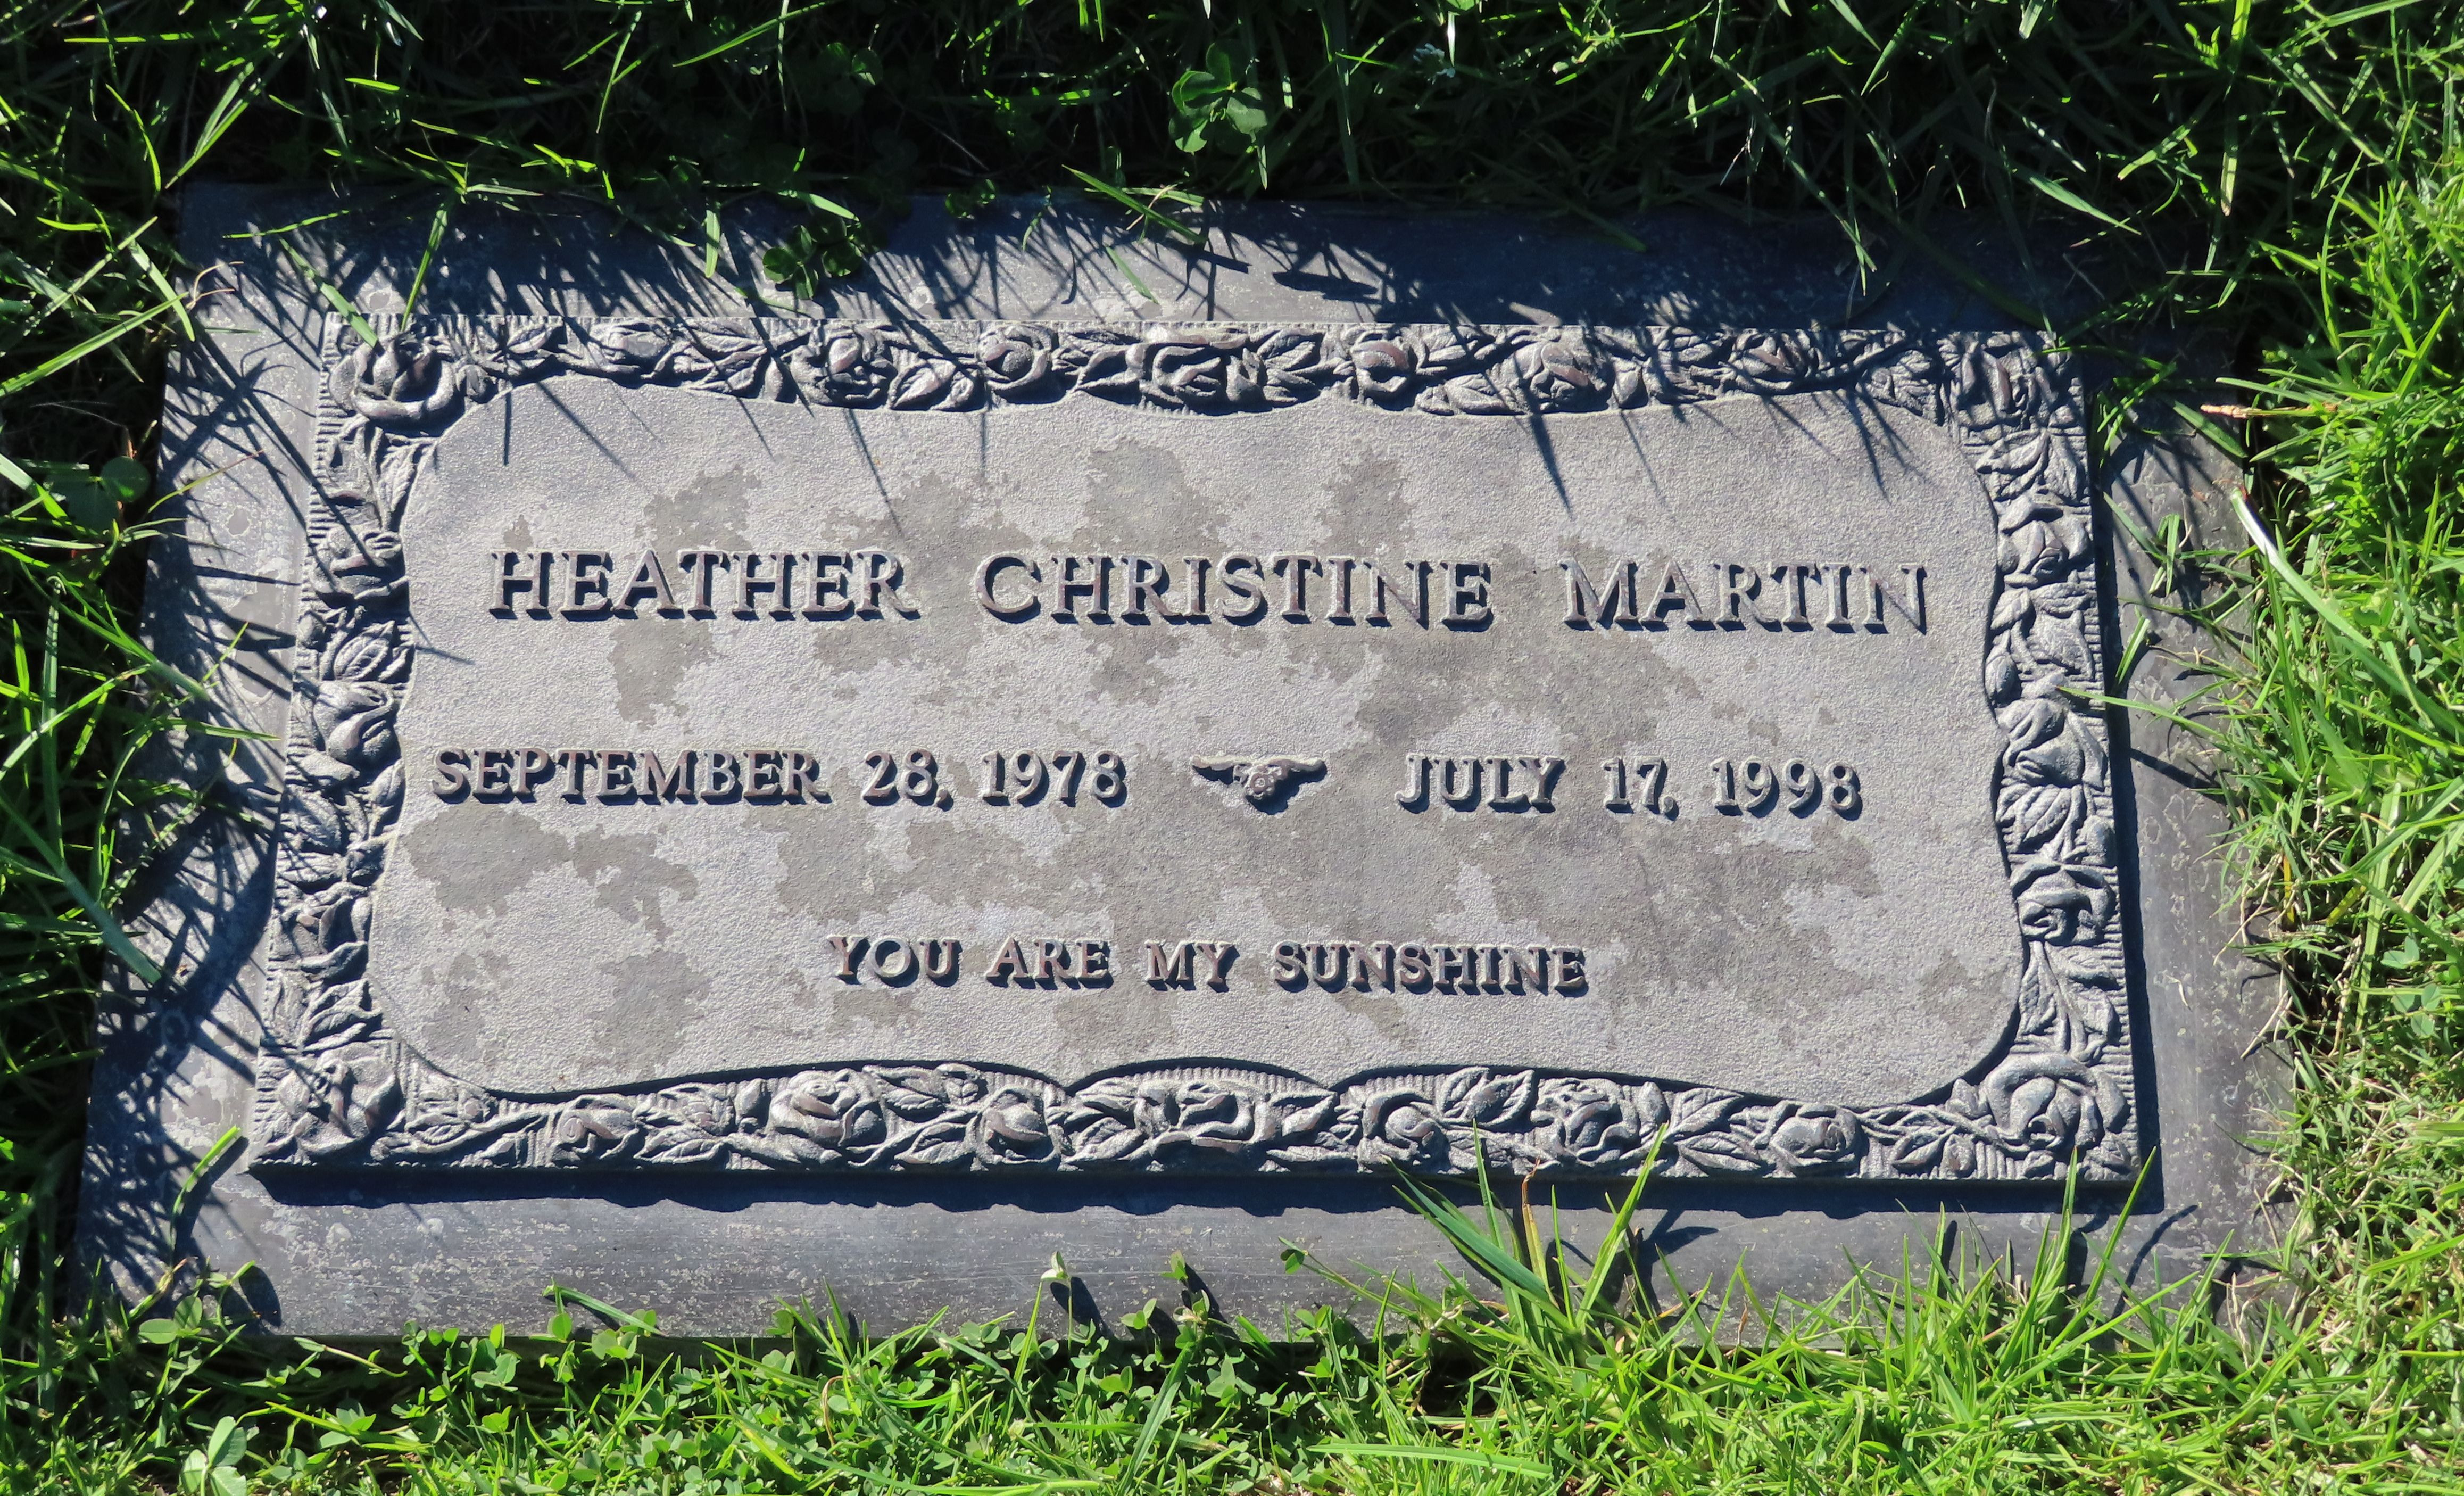 Heather Christine Martin